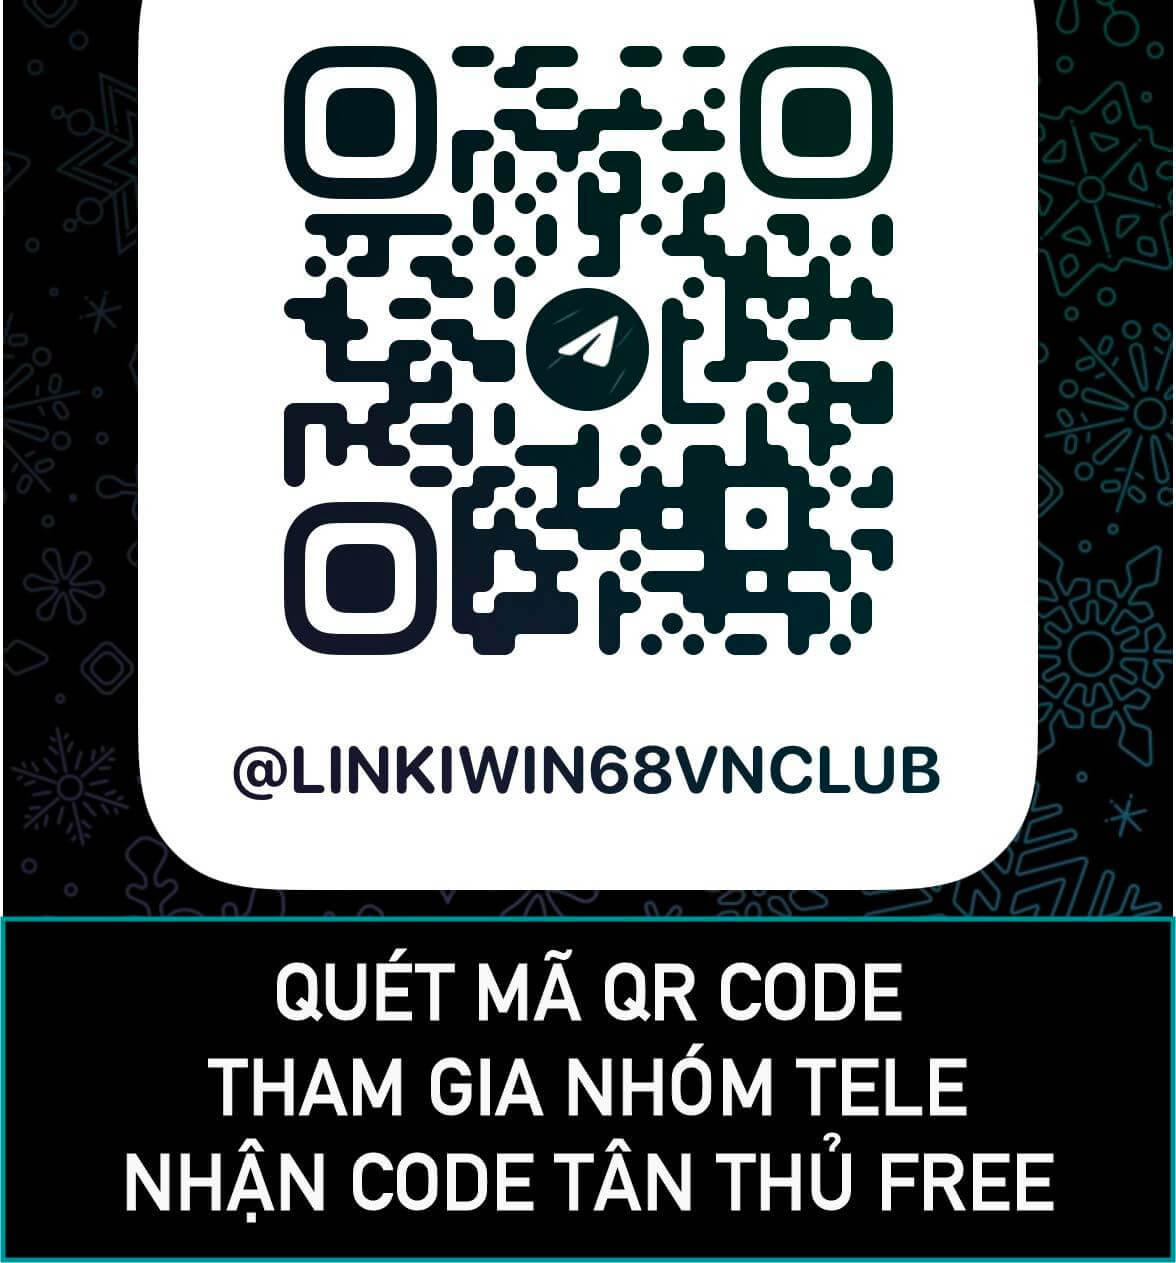 Quét mã QR tại đây để nhận code tân thủ iwin club